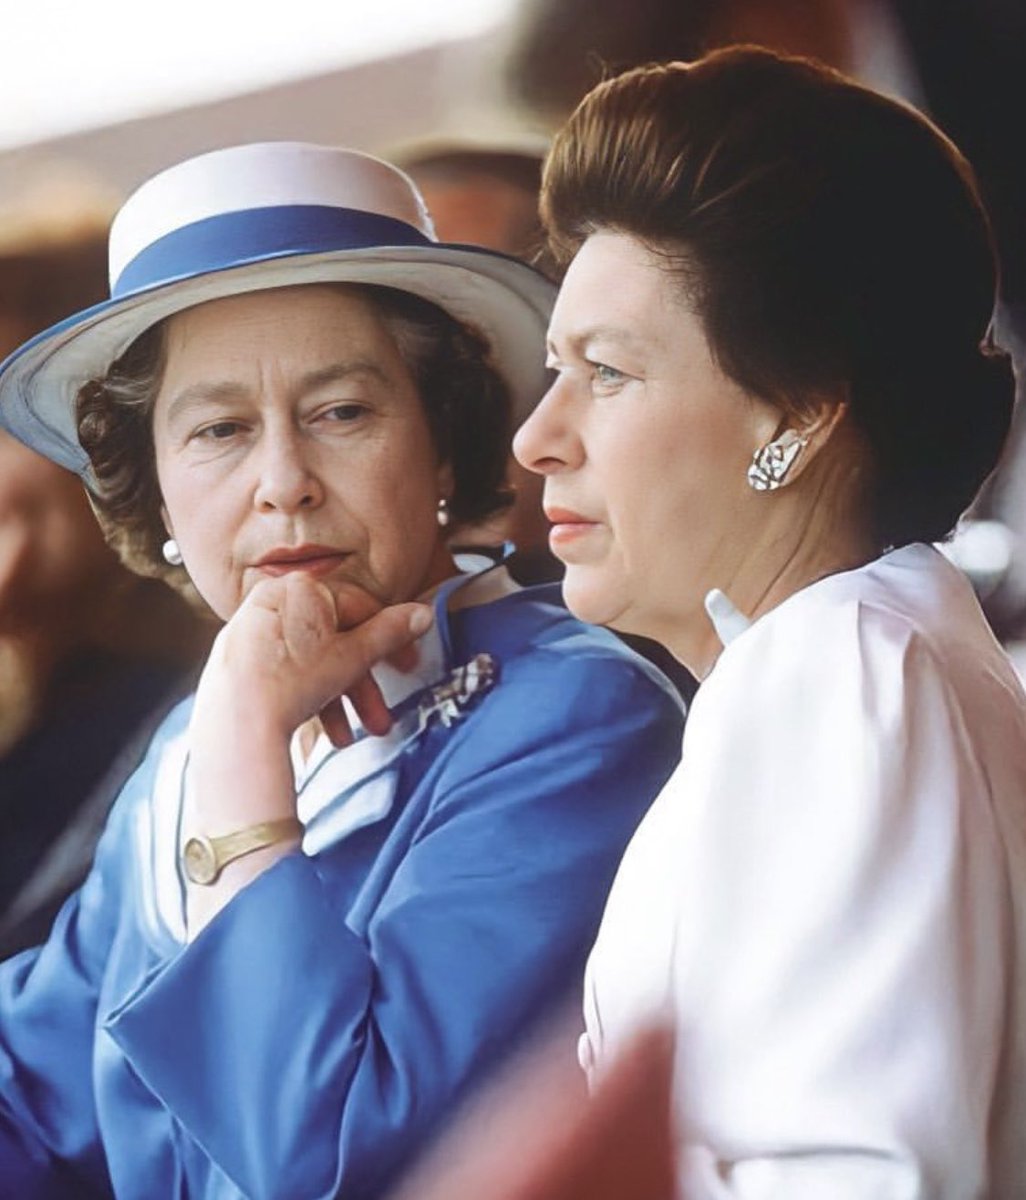 Queen Elizabeth II and her sister Princess Margaret in 1988. 

#TheQueen #QueenElizabeth #PrincessMargaret